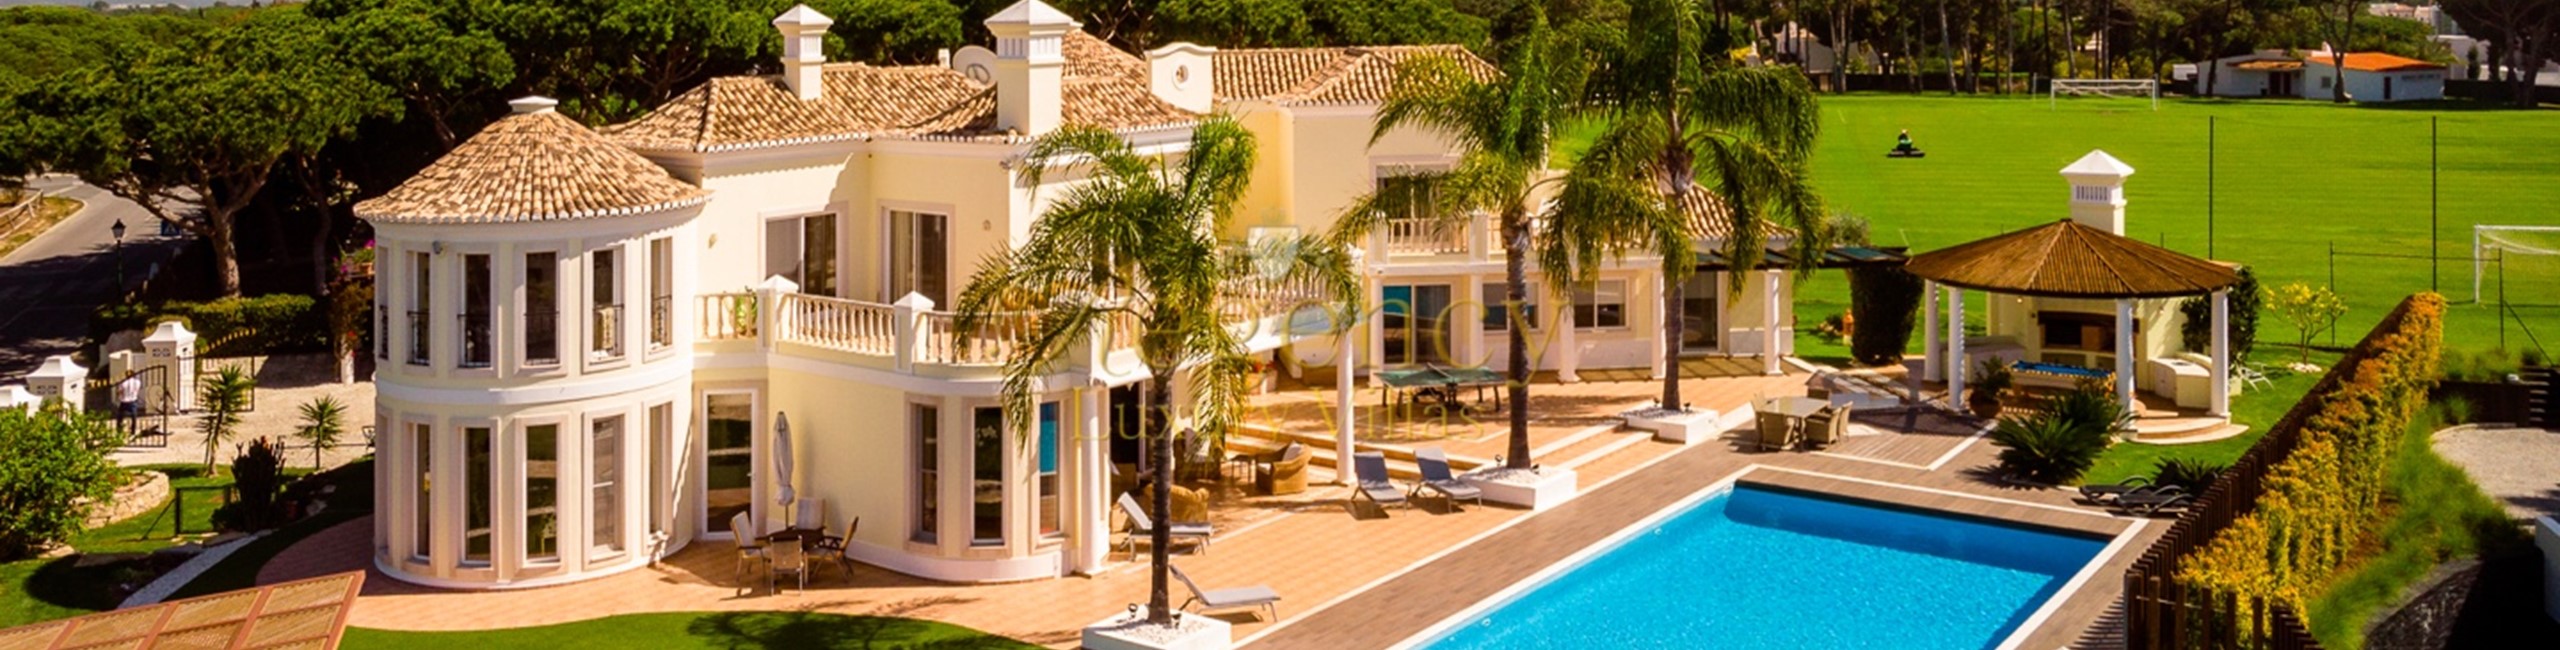 Holiday 4 Bedroom Villa To Rent In Vale Do Lobo Algarve